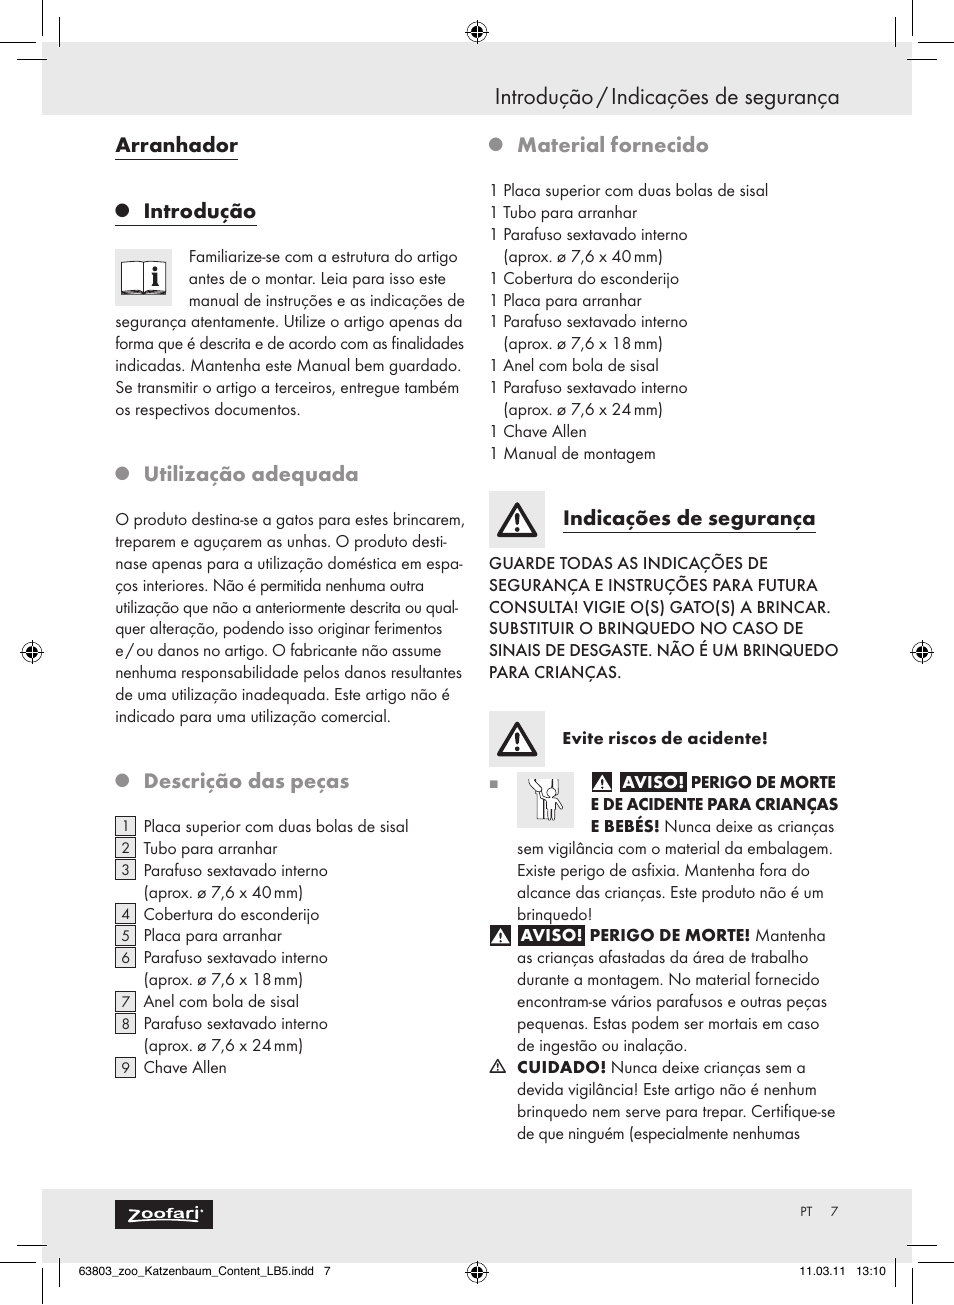 Introdução / indicações de segurança, Arranhador, Introdução | Utilização adequada, Descrição das peças, Material fornecido, Indicações de segurança | Zoofari Scratching Post Z30853 User Manual | Page 5 / 11